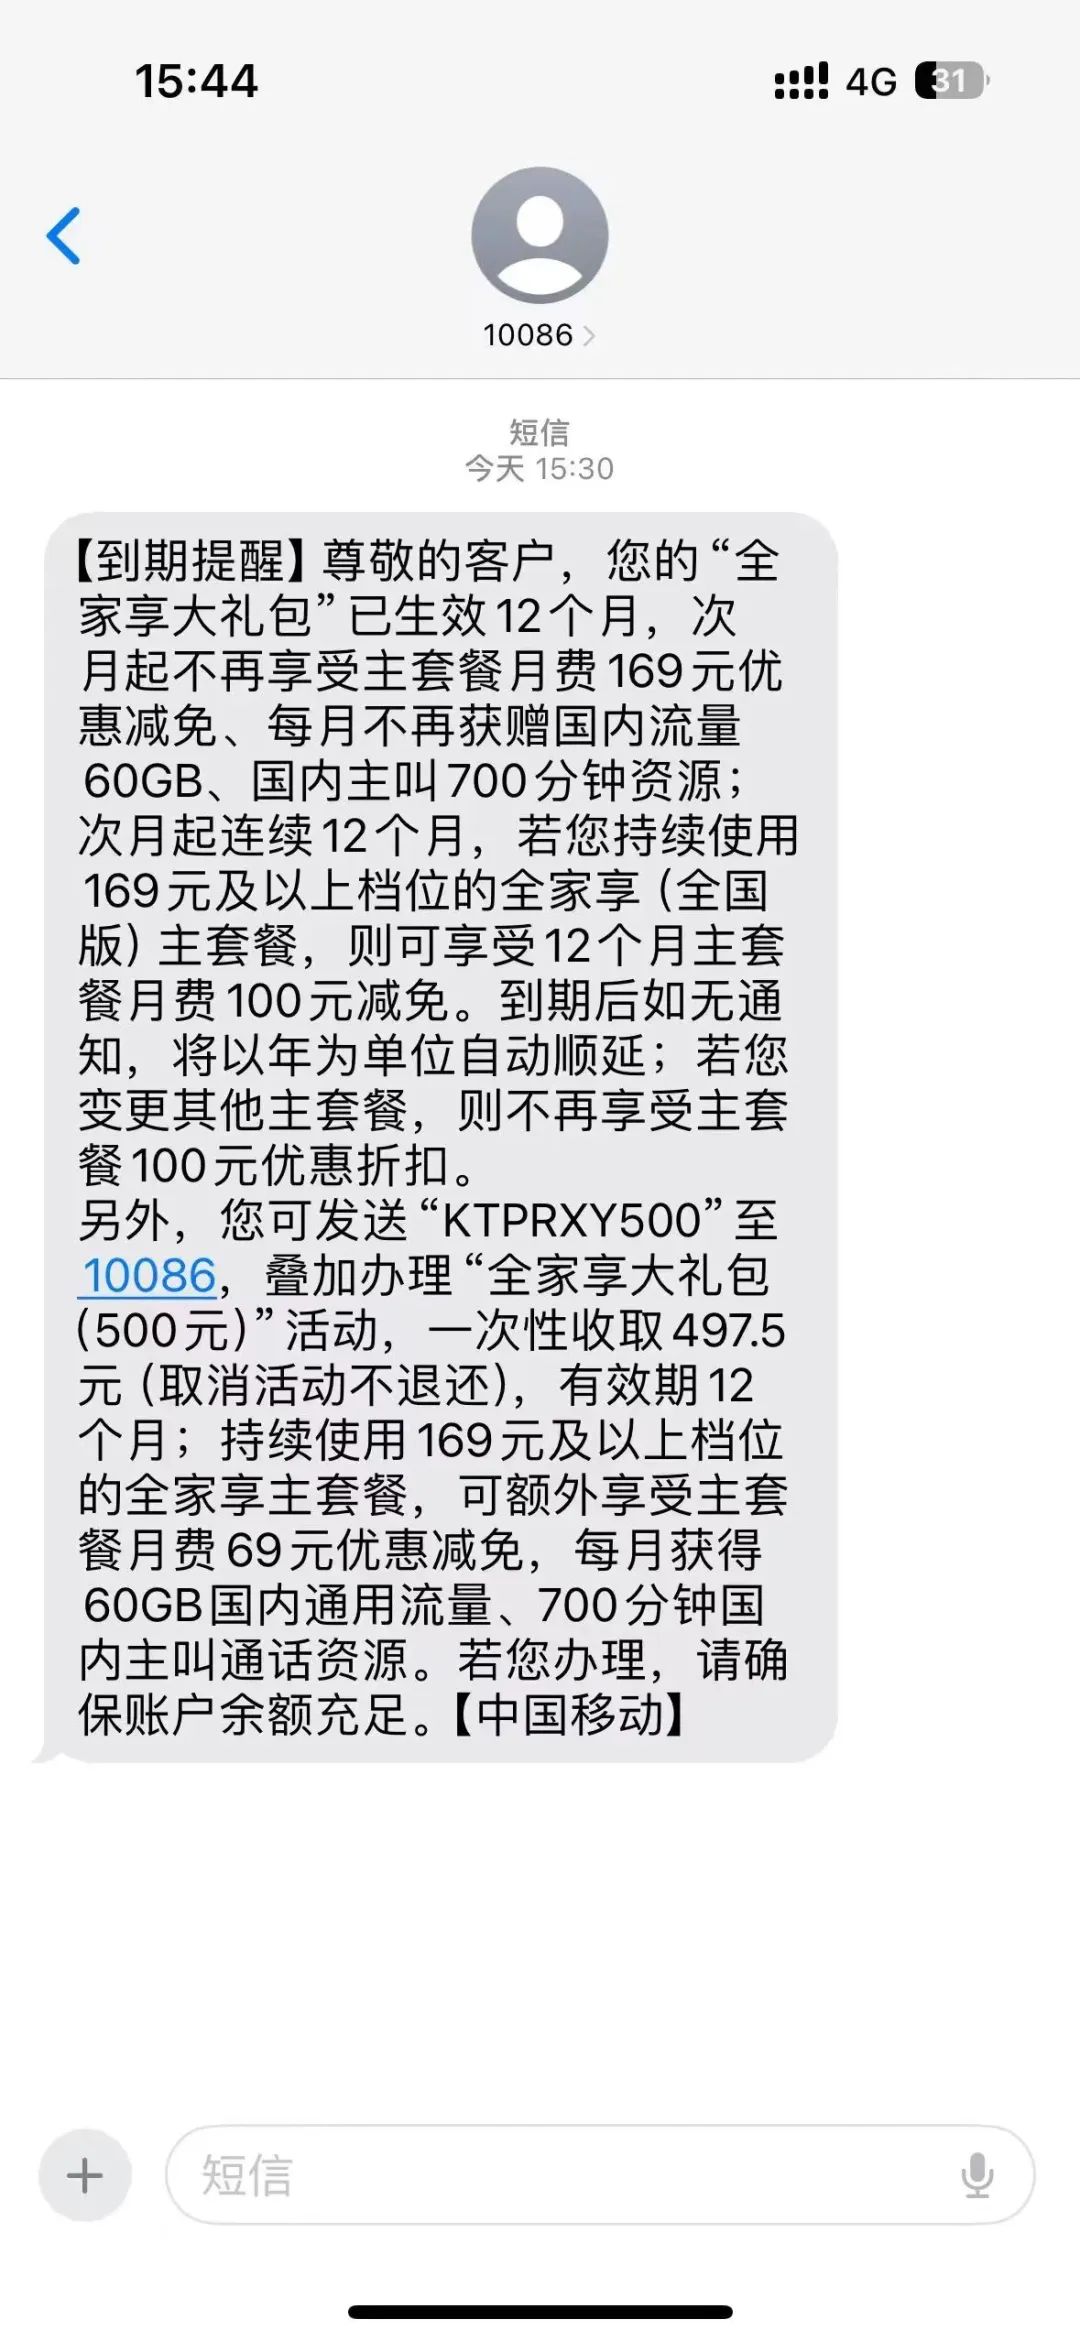 2023年北京移动大福卡Pro版500包一年续约方法插图3